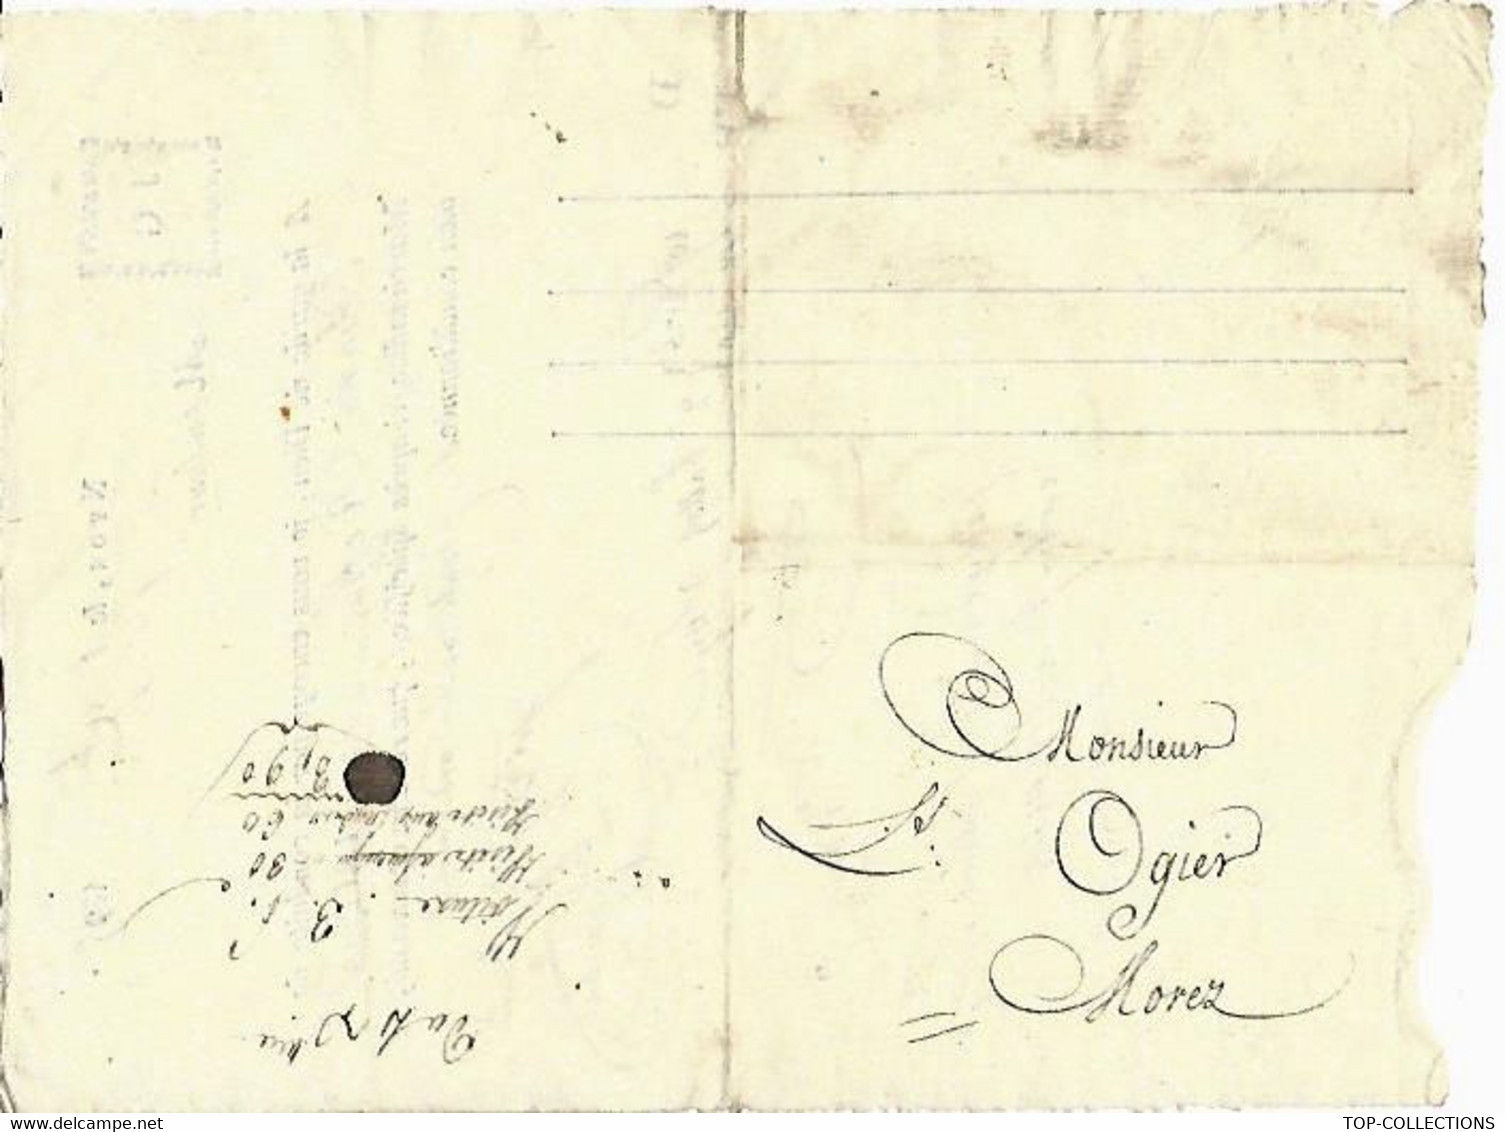 1815 Jacques Galliard à Nyon SUISSE Lettre De Voiture Roulage Transport Ballots De Soye Soie => Louis Ogier à Morez Jura - Schweiz